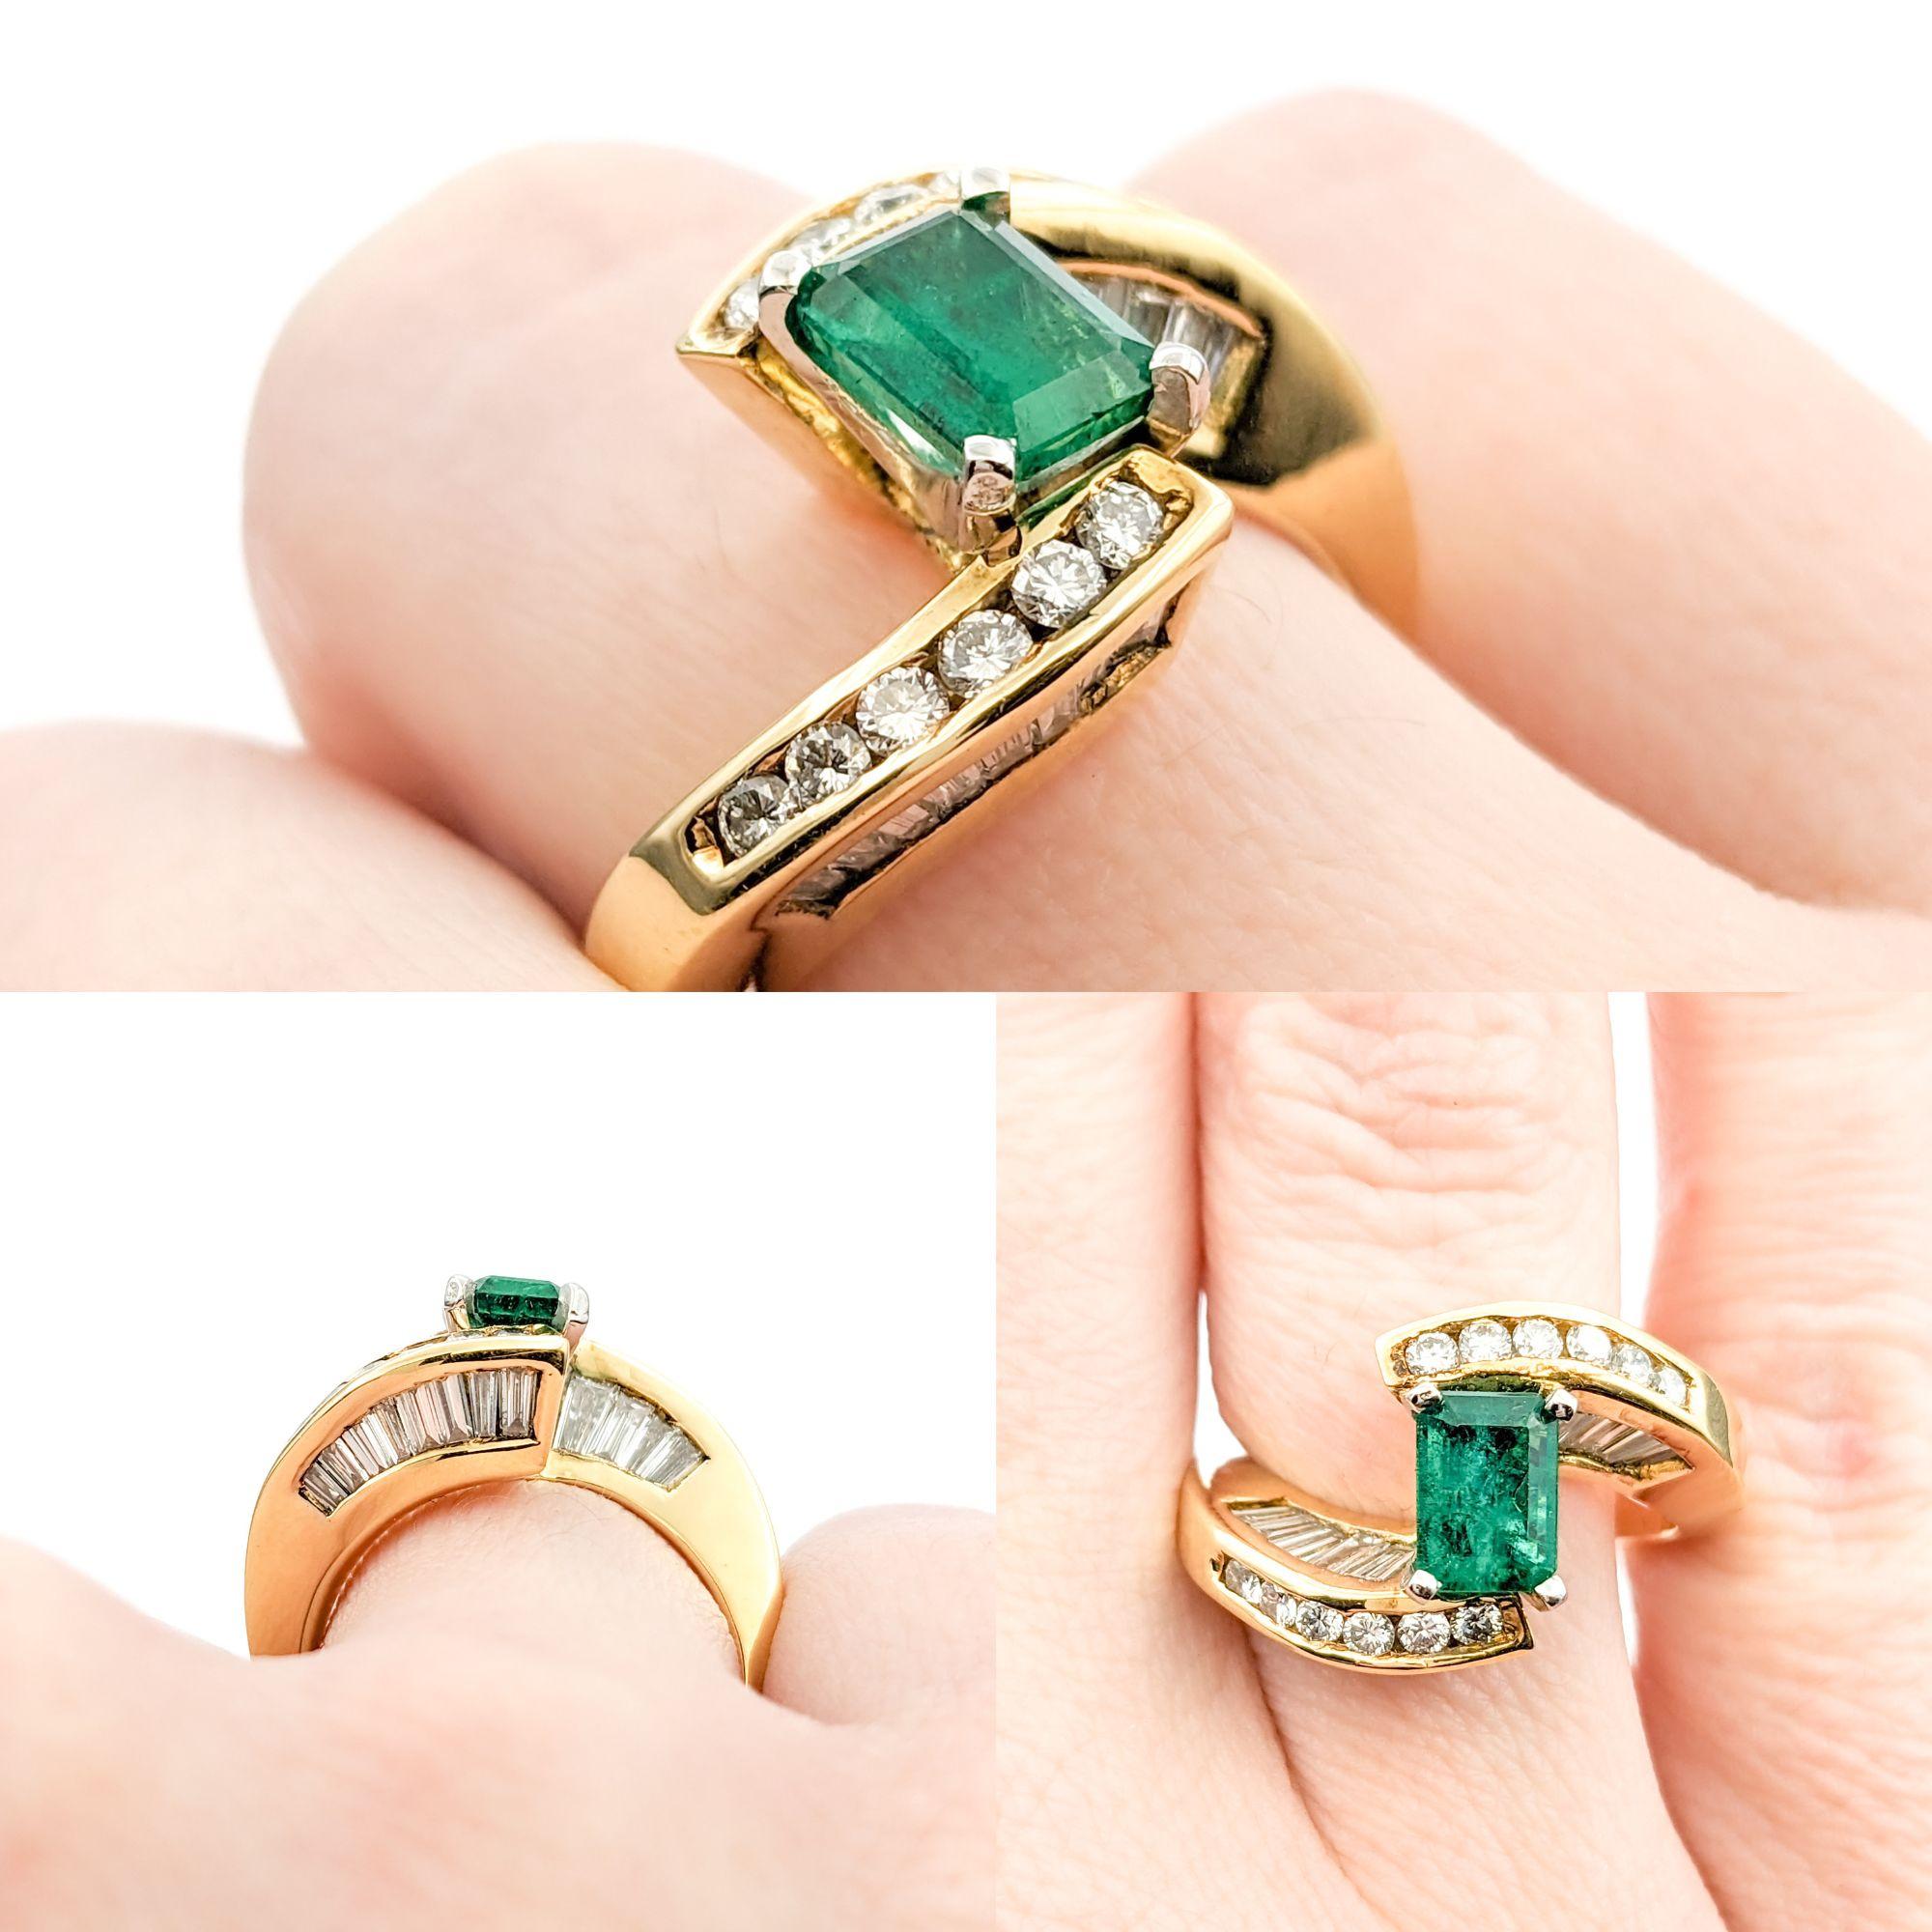 Hervorragender Bypass-Ring mit 18 Karat Smaragd und Diamant

Gönnen Sie sich die luxuriöse Schönheit dieses exquisiten Rings aus 18 Karat Gelbgold, der mit 1,50 ct schillernden runden und Baguette-Diamanten besetzt ist. Die funkelnden Diamanten